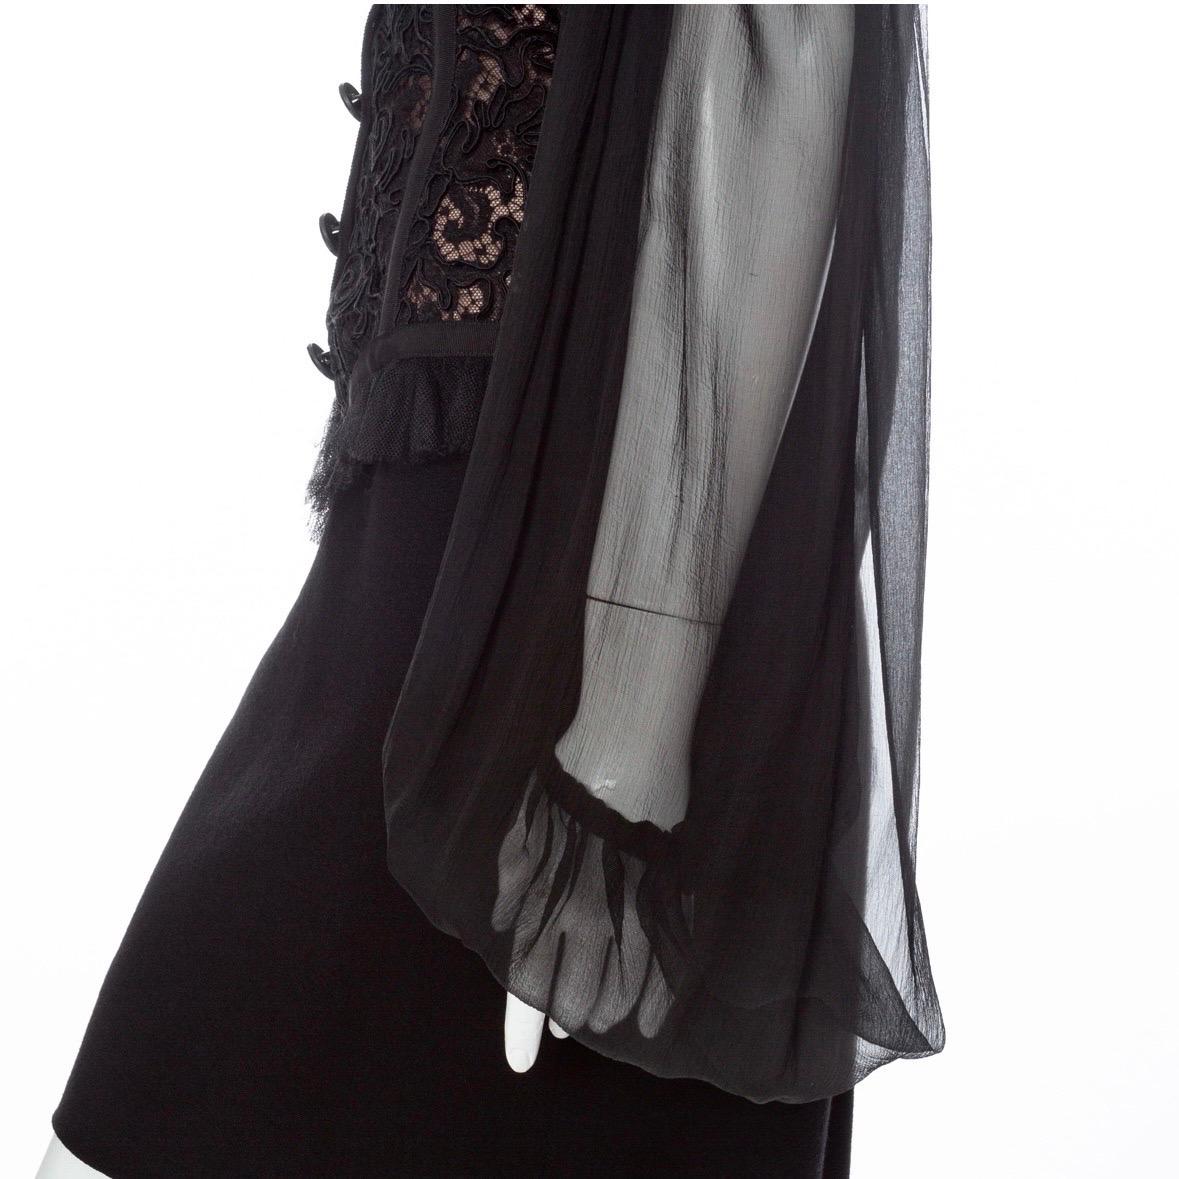 Yves Saint Laurent 1980s Black Off-the-Shoulder Lace Bustier Dress For Sale 2